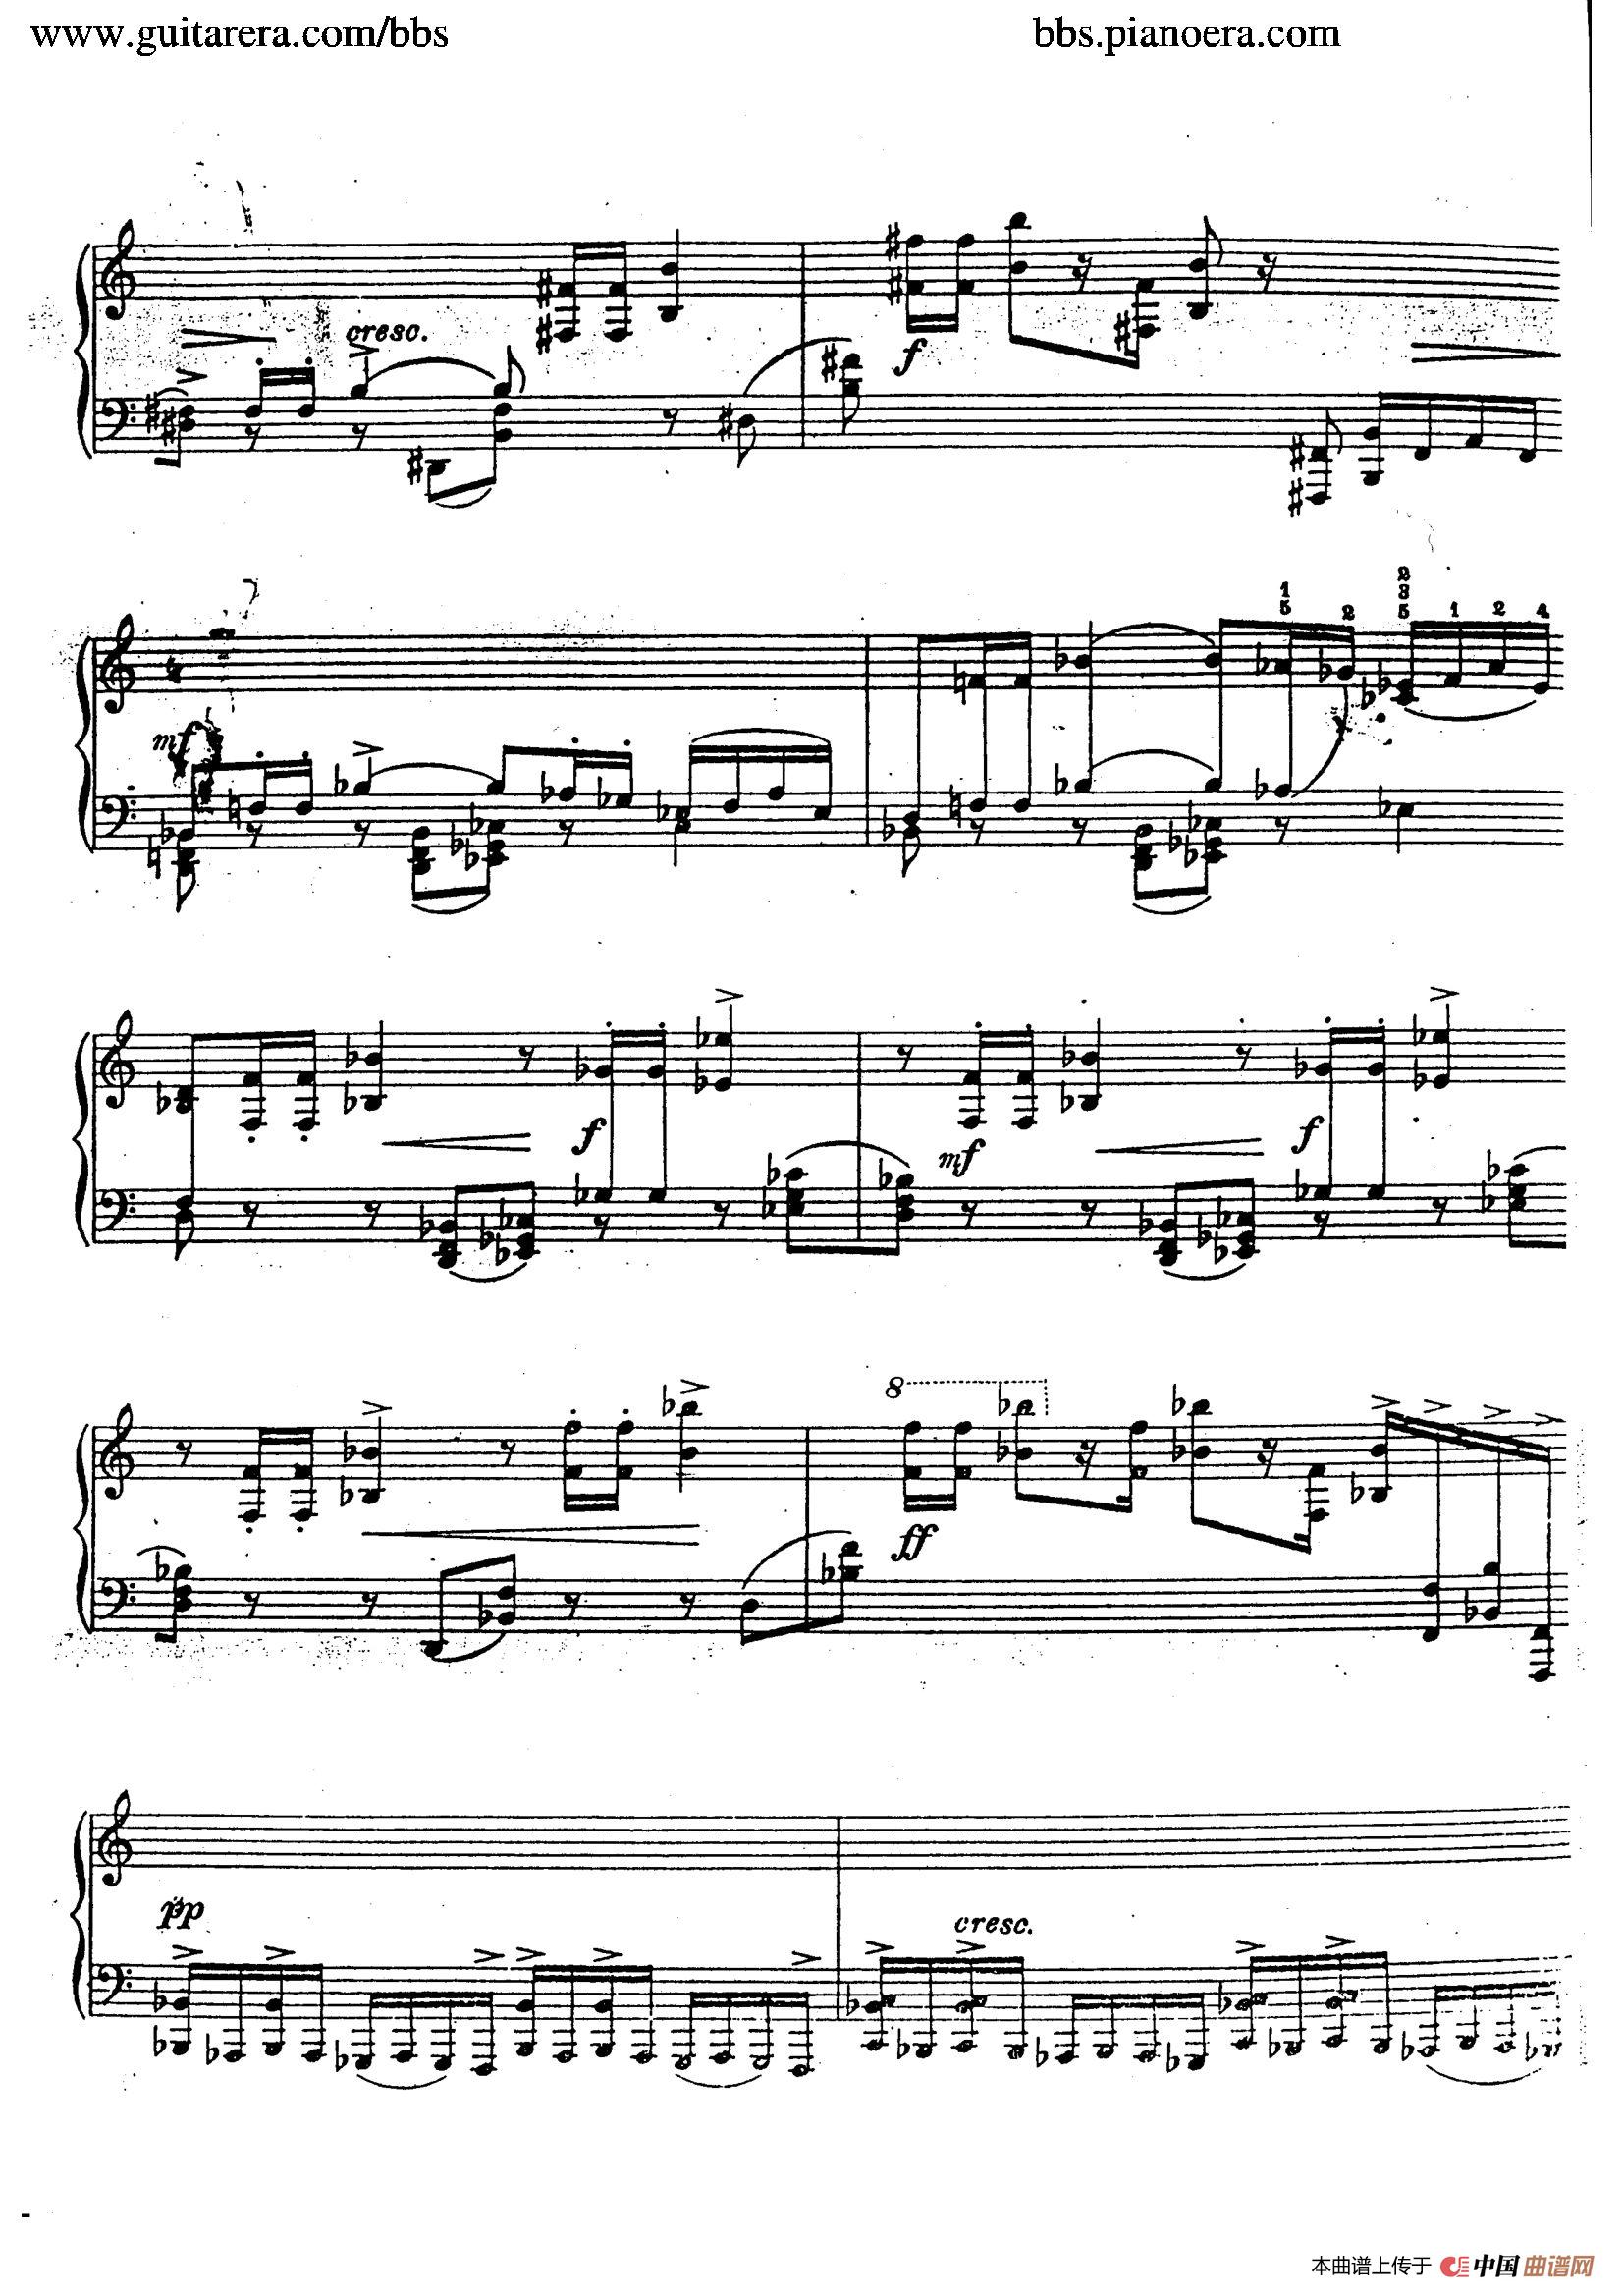 《Etude in C Major For The Left Hand Op.32》钢琴曲谱图分享